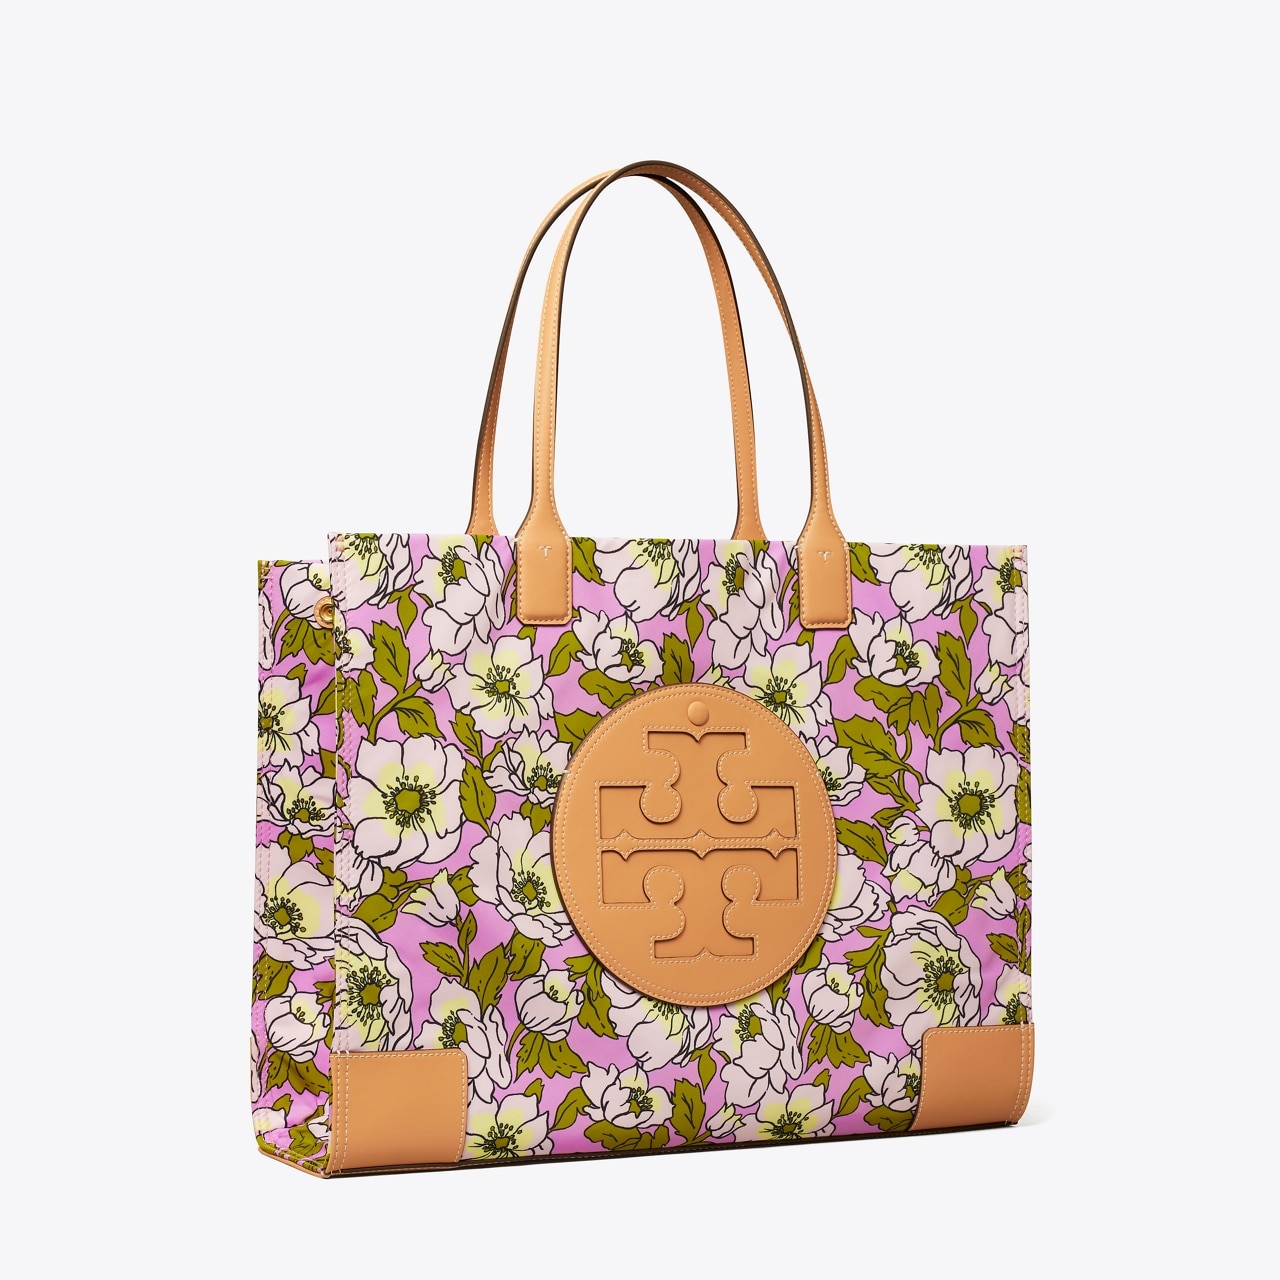 Tory Burch Ella Floral Canvas Tote Bag